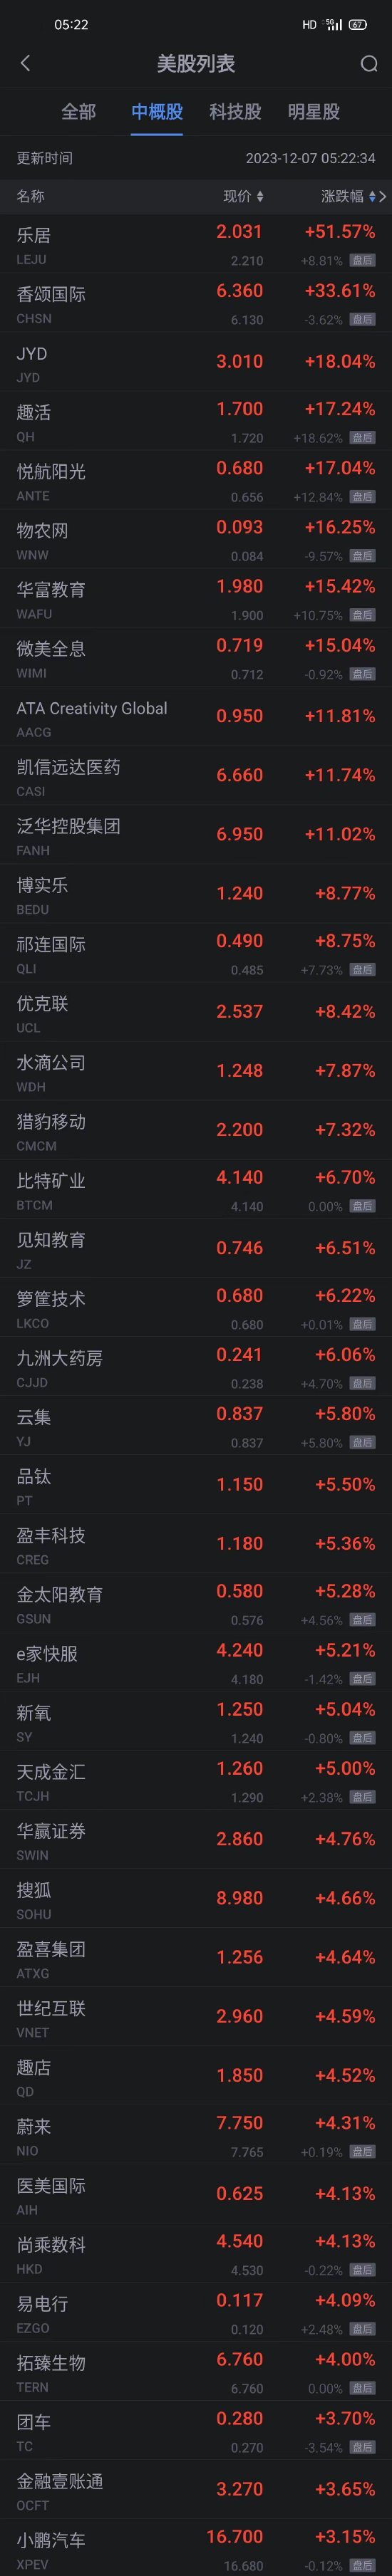 周三热门中概股多数上涨 乐居涨超51% 蔚来搜狐涨超4% 途牛跌超6%